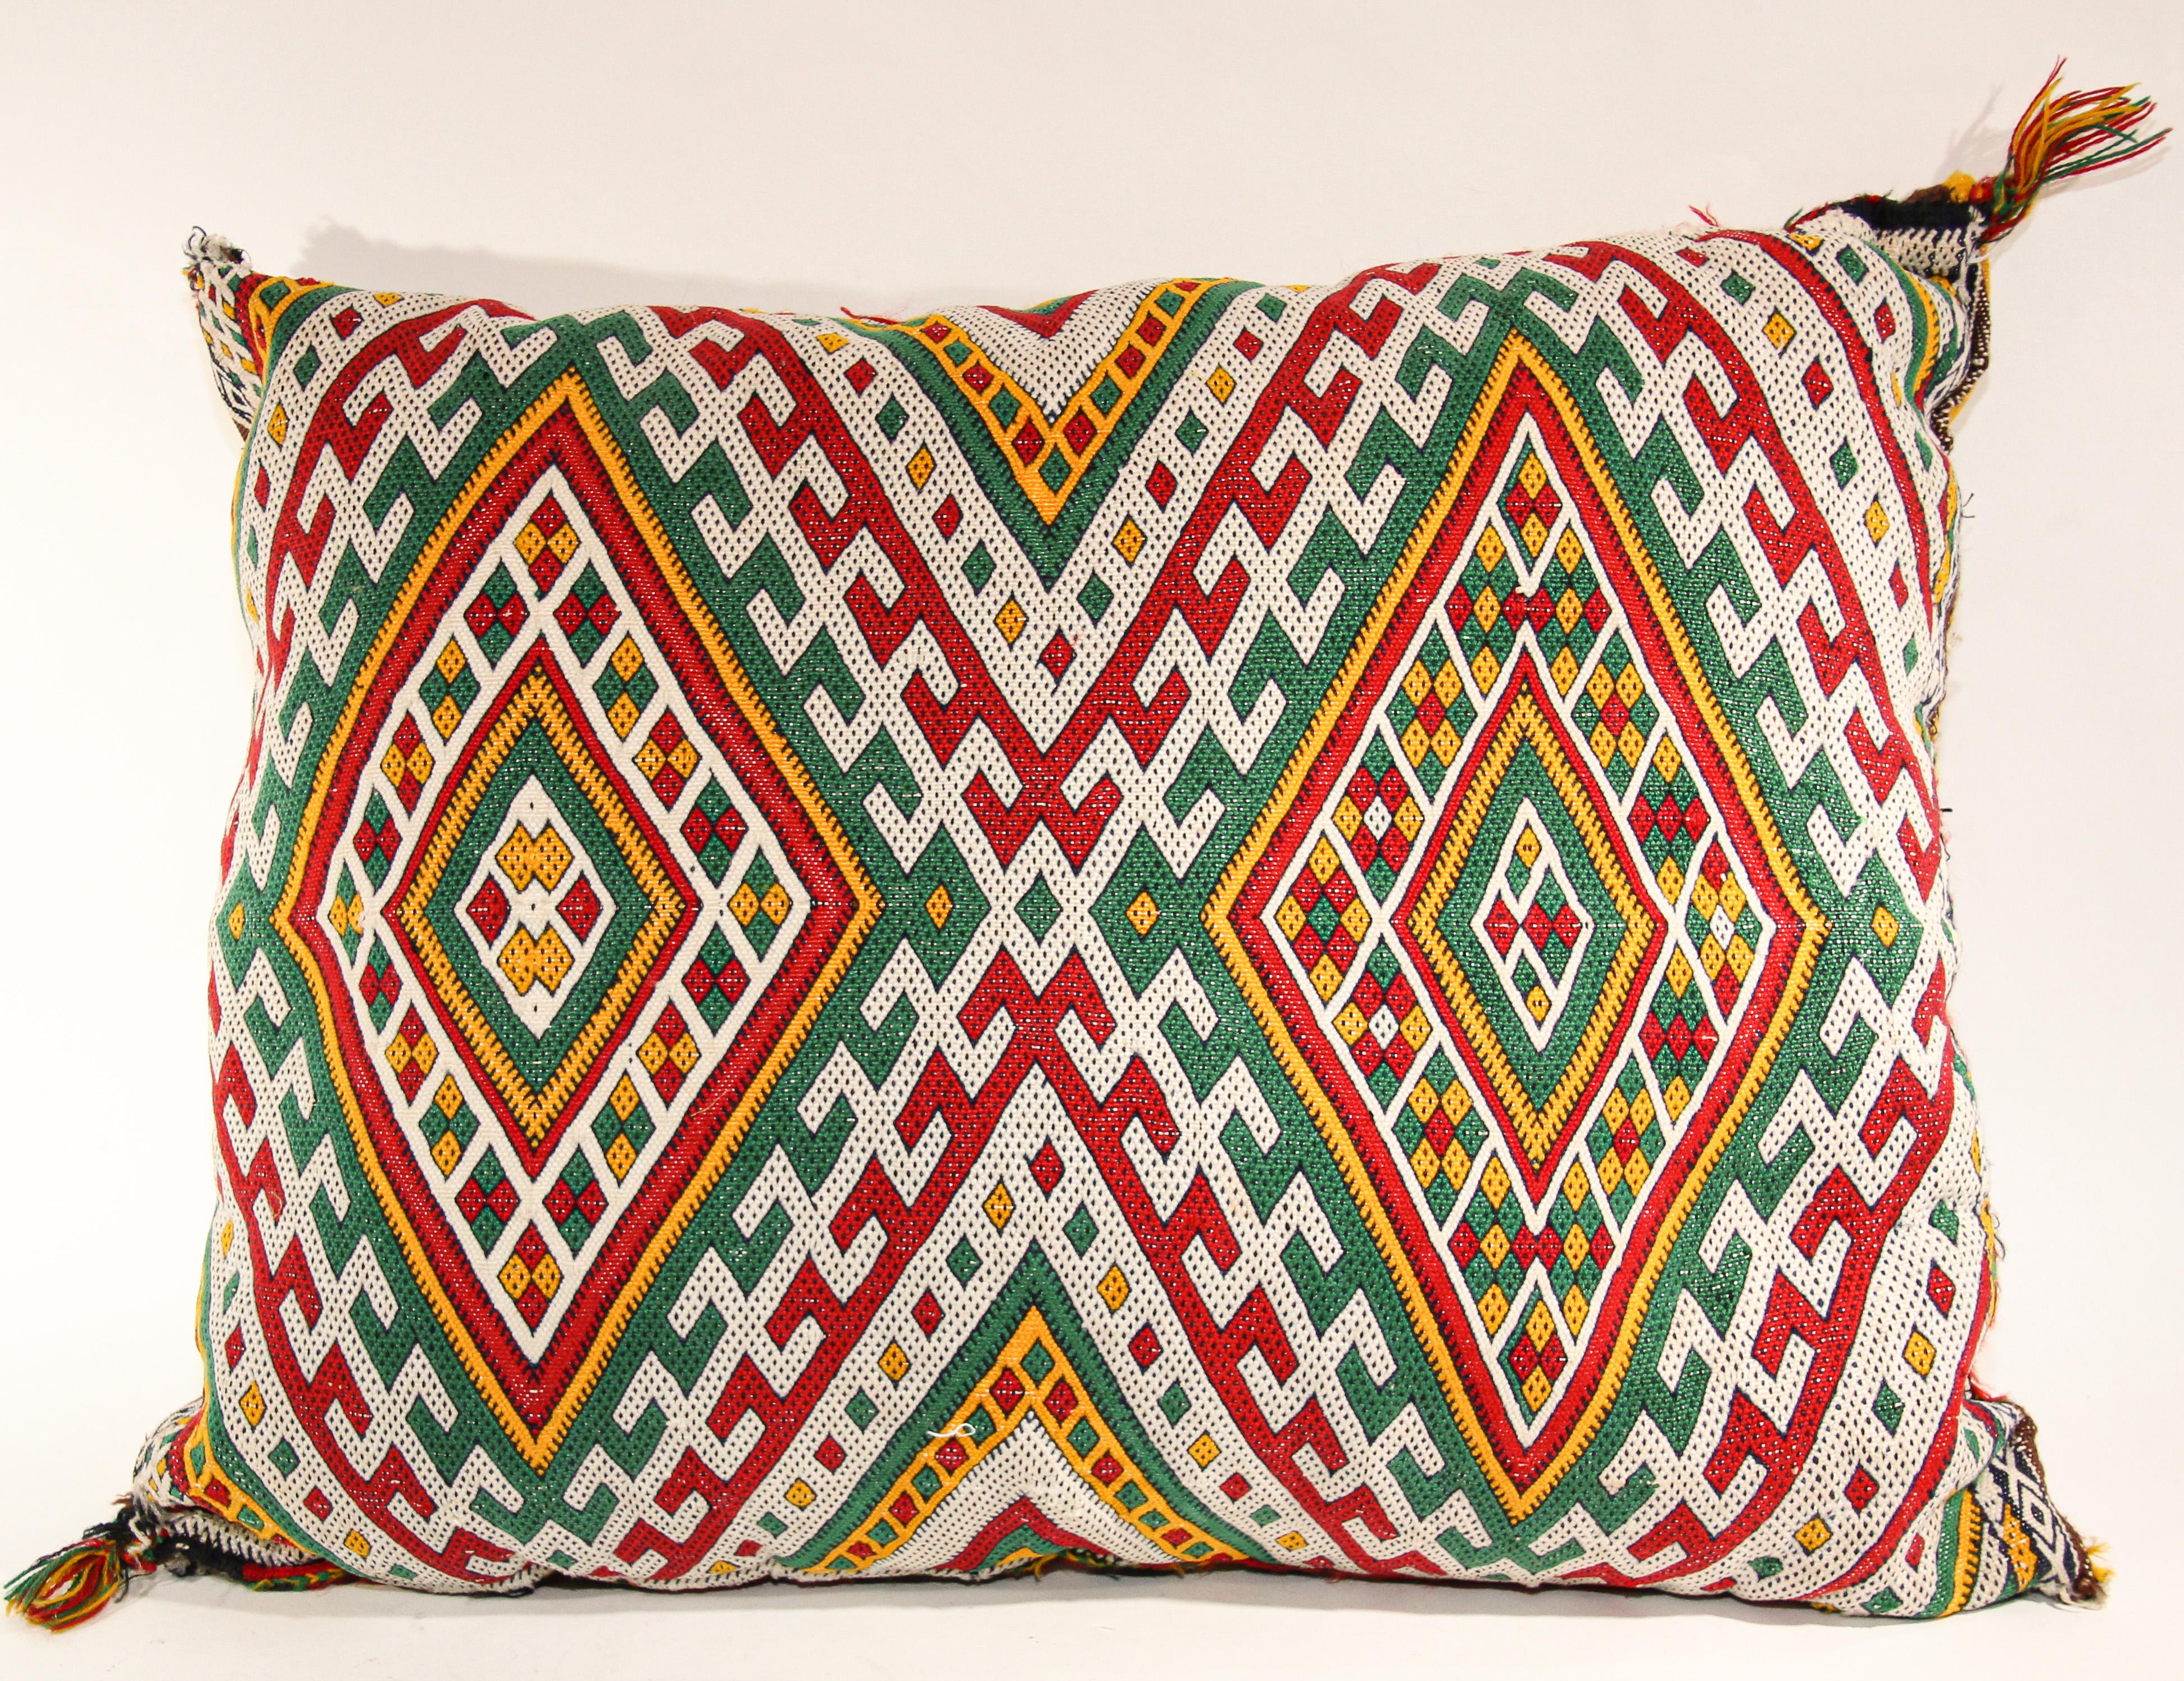 Coussin jeté berbère ethnique marocain tribal tissé à la main fabriqué à partir d'un tapis vintage.
Le recto et le verso sont fabriqués à partir d'un tapis différent, le recto étant plus élaboré et le verso plus simple.
Motifs géométriques tribaux